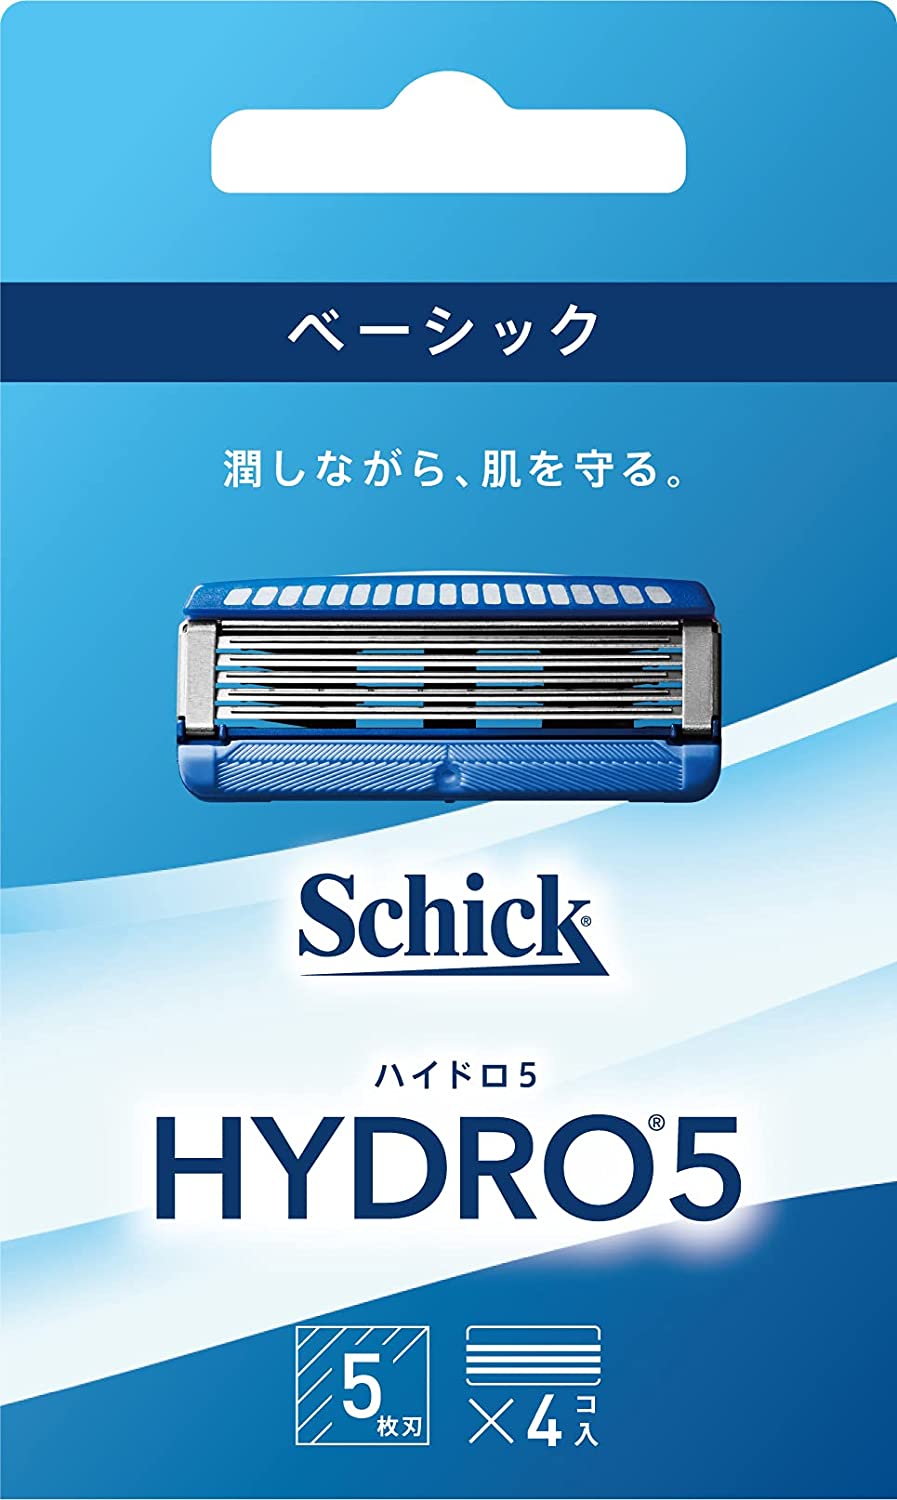 【送料無料/新品】 Schick(シック) ハイドロ ハイドロ5 5枚刃 スキンガード付 (4コ入) 替刃 ベーシック メンズシェーバー替刃